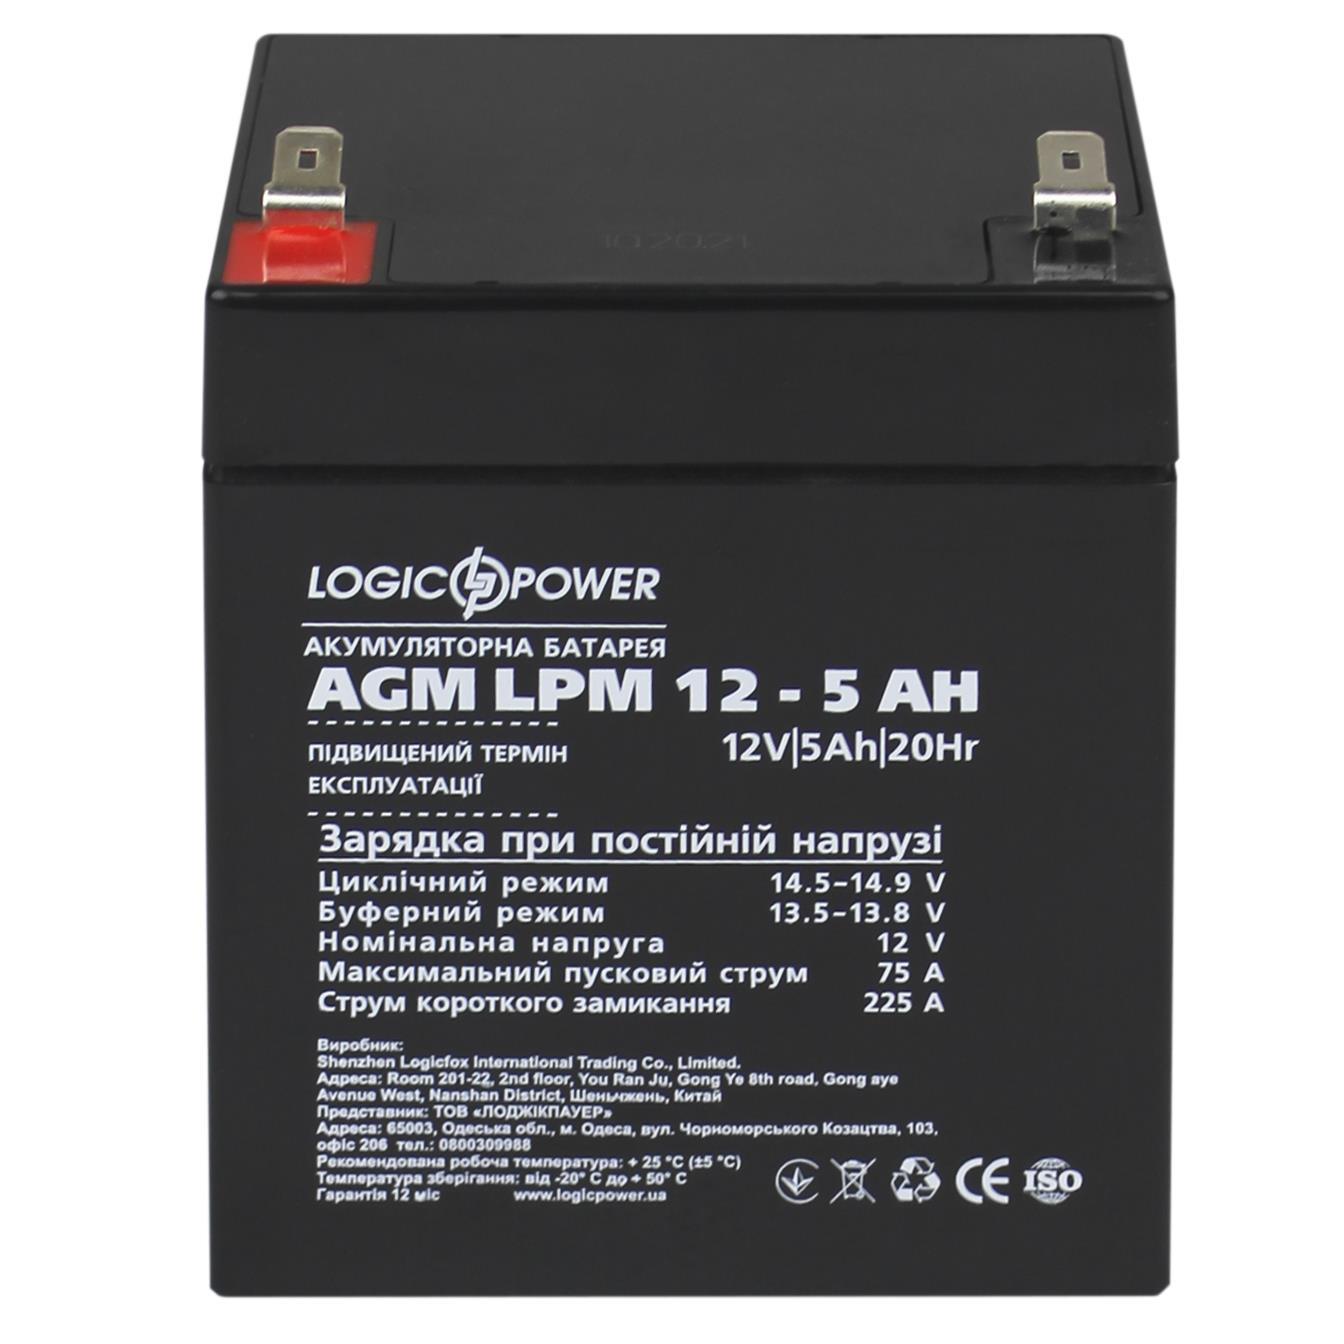 продаємо LogicPower AGM LPM 12V - 5 Ah (3861) в Україні - фото 4